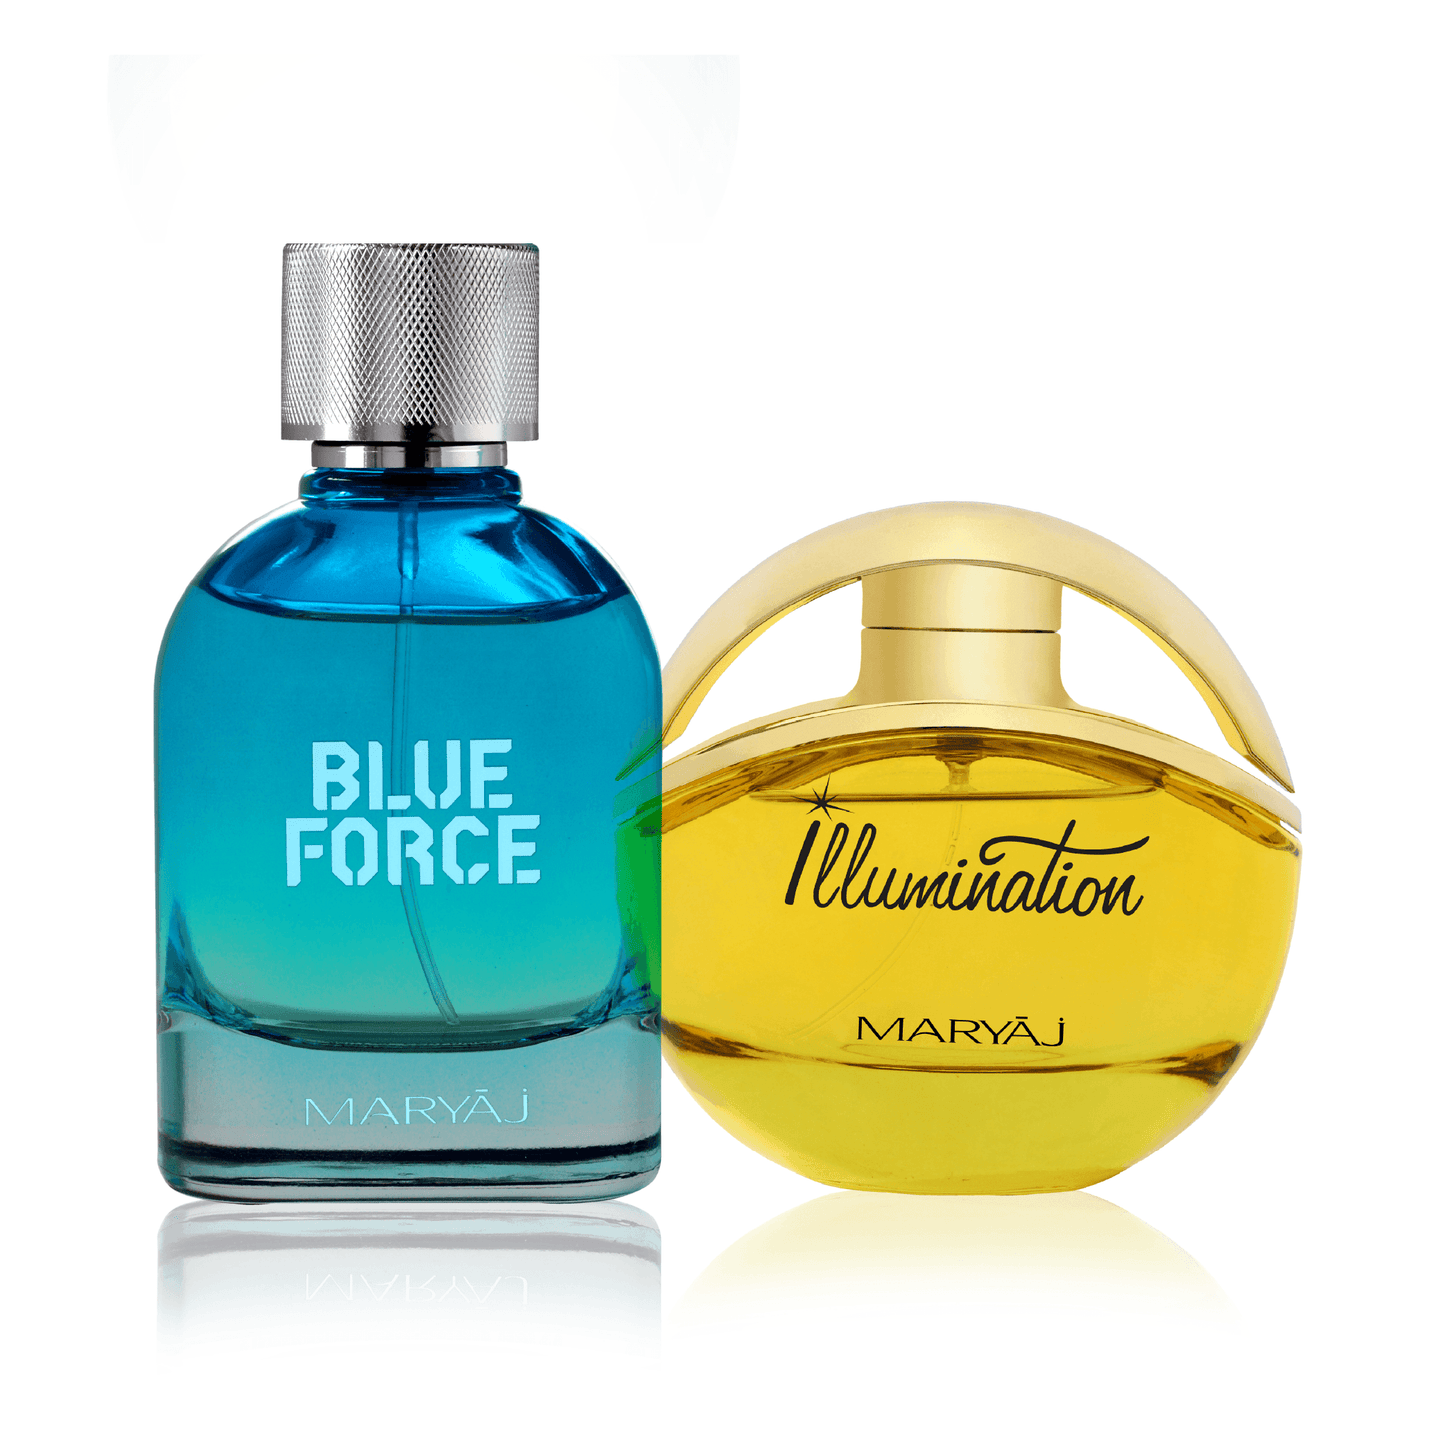 Blue Force & Illumination Valentine's Day Perfume Couple Set